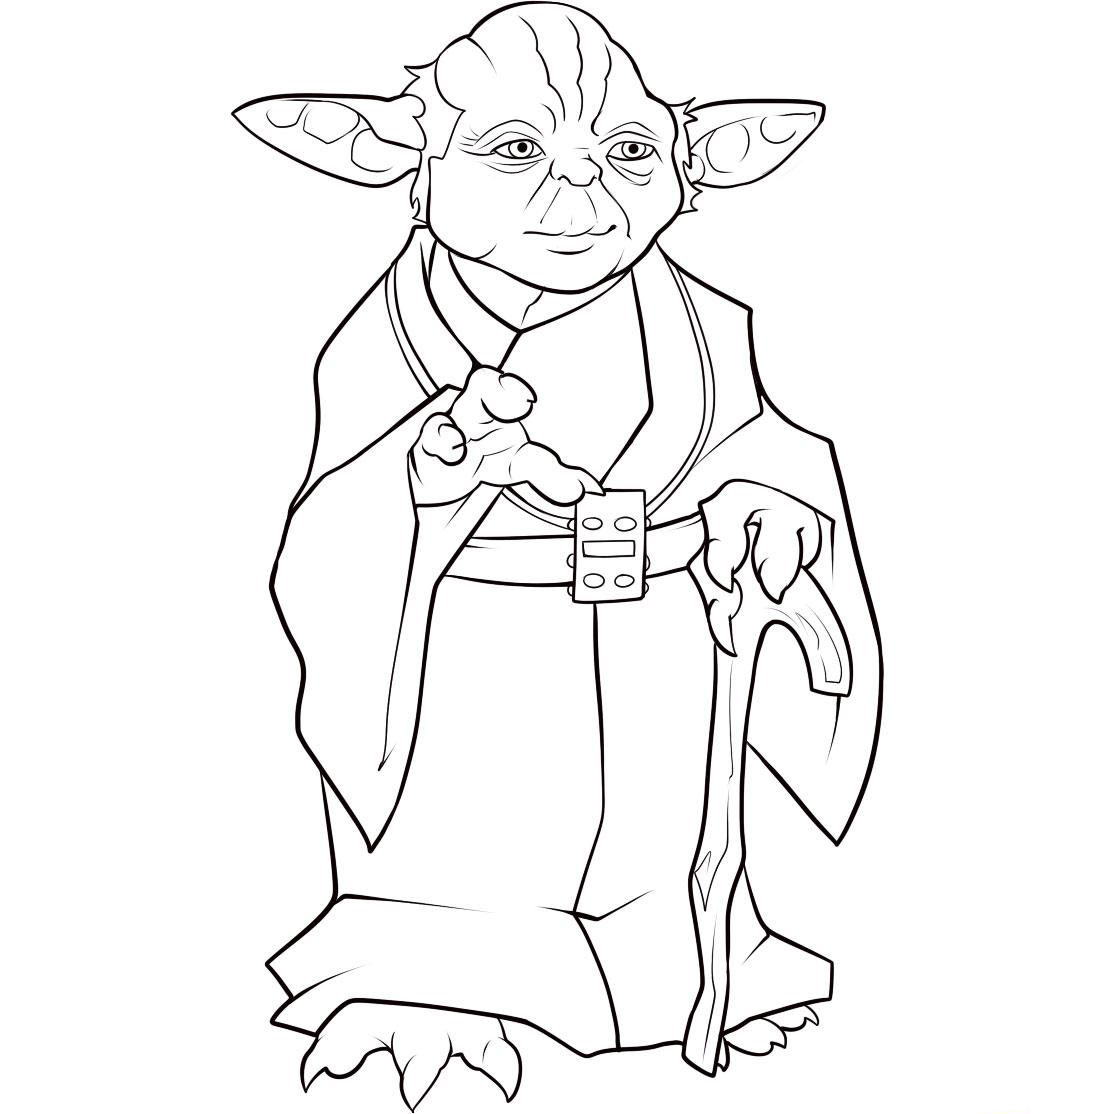 Yoda outline